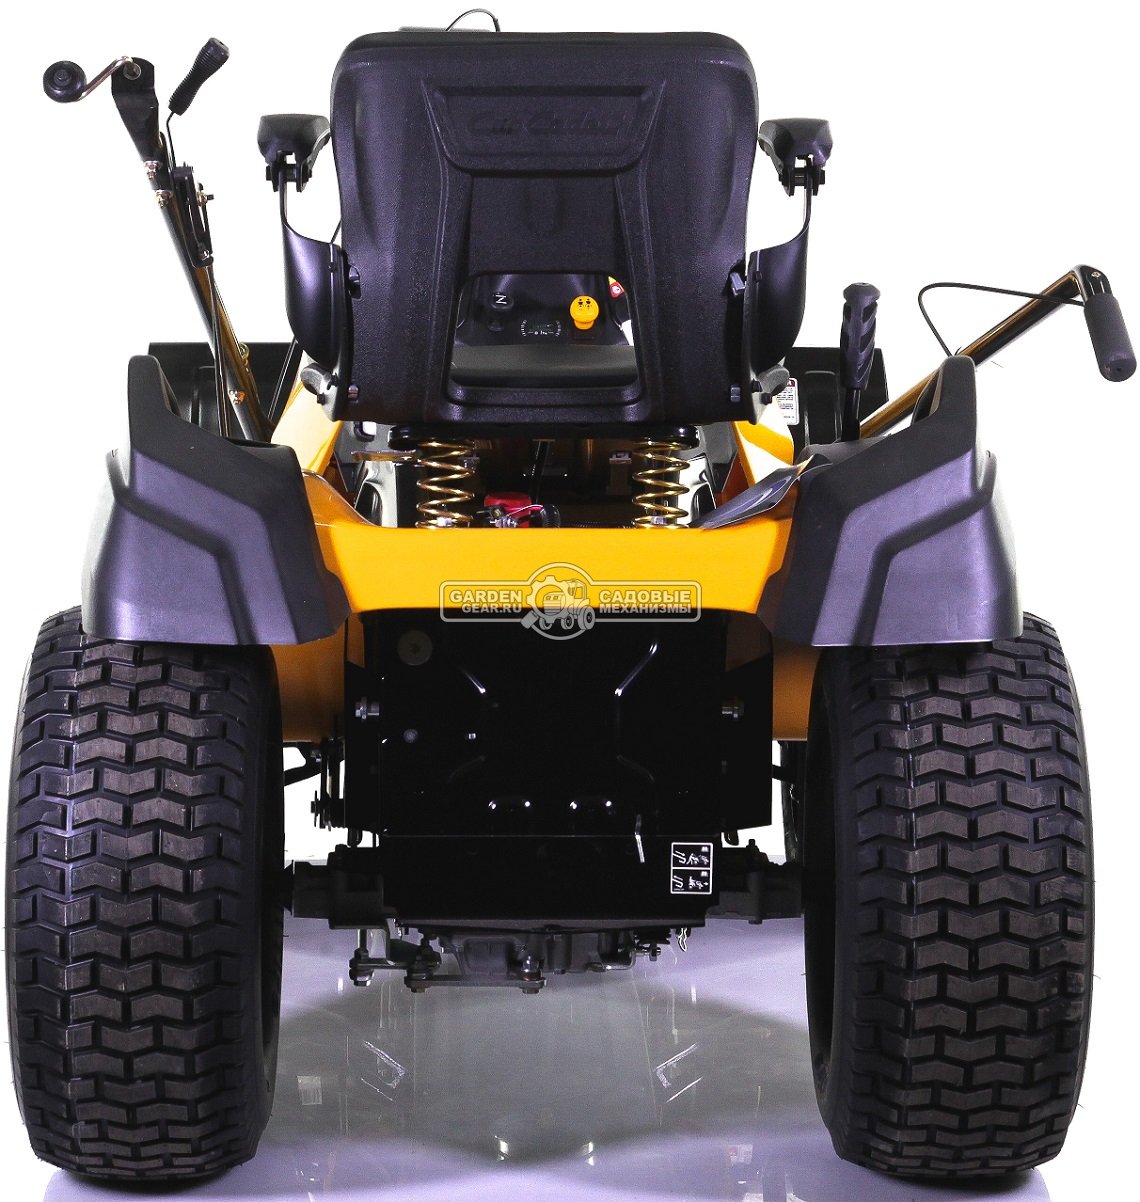 Снегоуборочный трактор Cub Cadet XT3 QS137 с 3X роторным снегоуборщиком